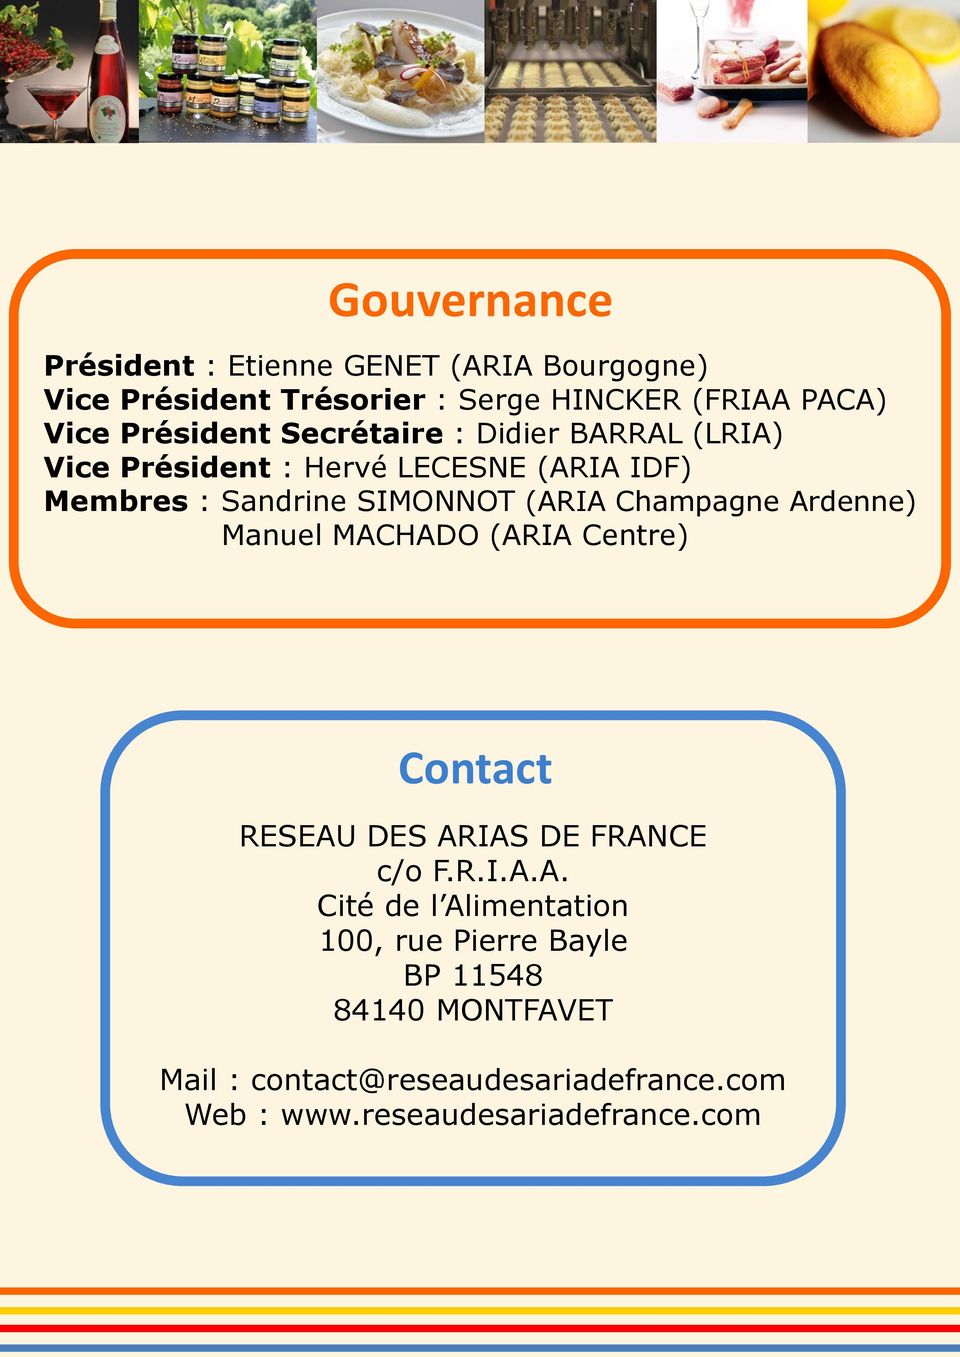 Champagne Ardenne) Manuel MACHADO (ARIA Centre) Contact RESEAU DES ARIAS DE FRANCE c/o F.R.I.A.A. Cité de l Alimentation 100, rue Pierre Bayle BP 11548 84140 MONTFAVET Mail : contact@reseaudesariadefrance.